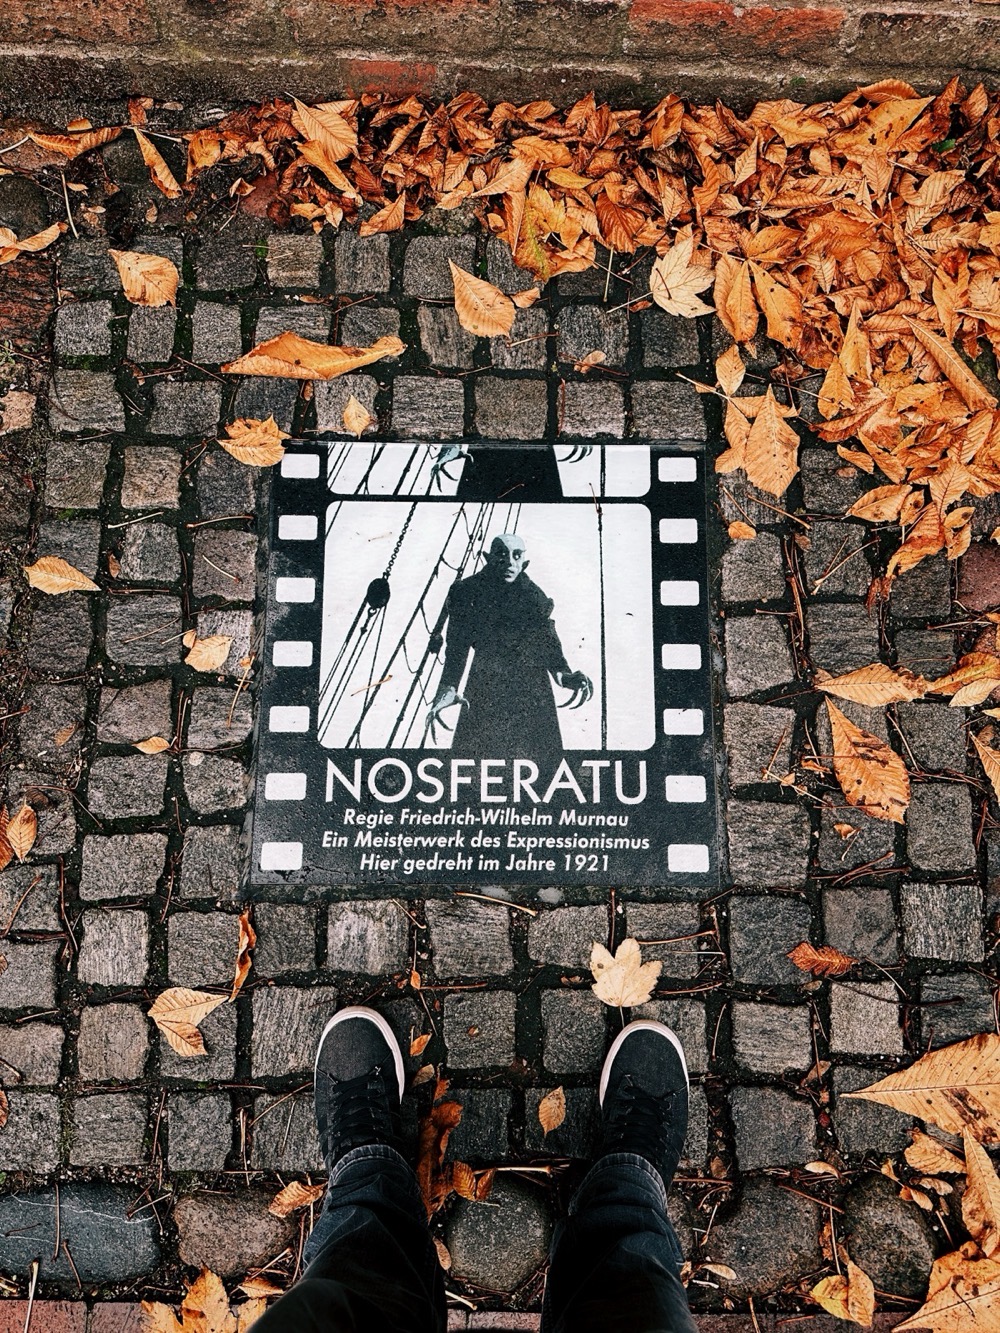 Gedenktafel in Wismar mit dem Text 'NOSFERATU /  Regie Friedrich-Wilhelm Murnau / Ein Meisterwerk des Expressionismus / Hier gedreht im Jahre 1921'